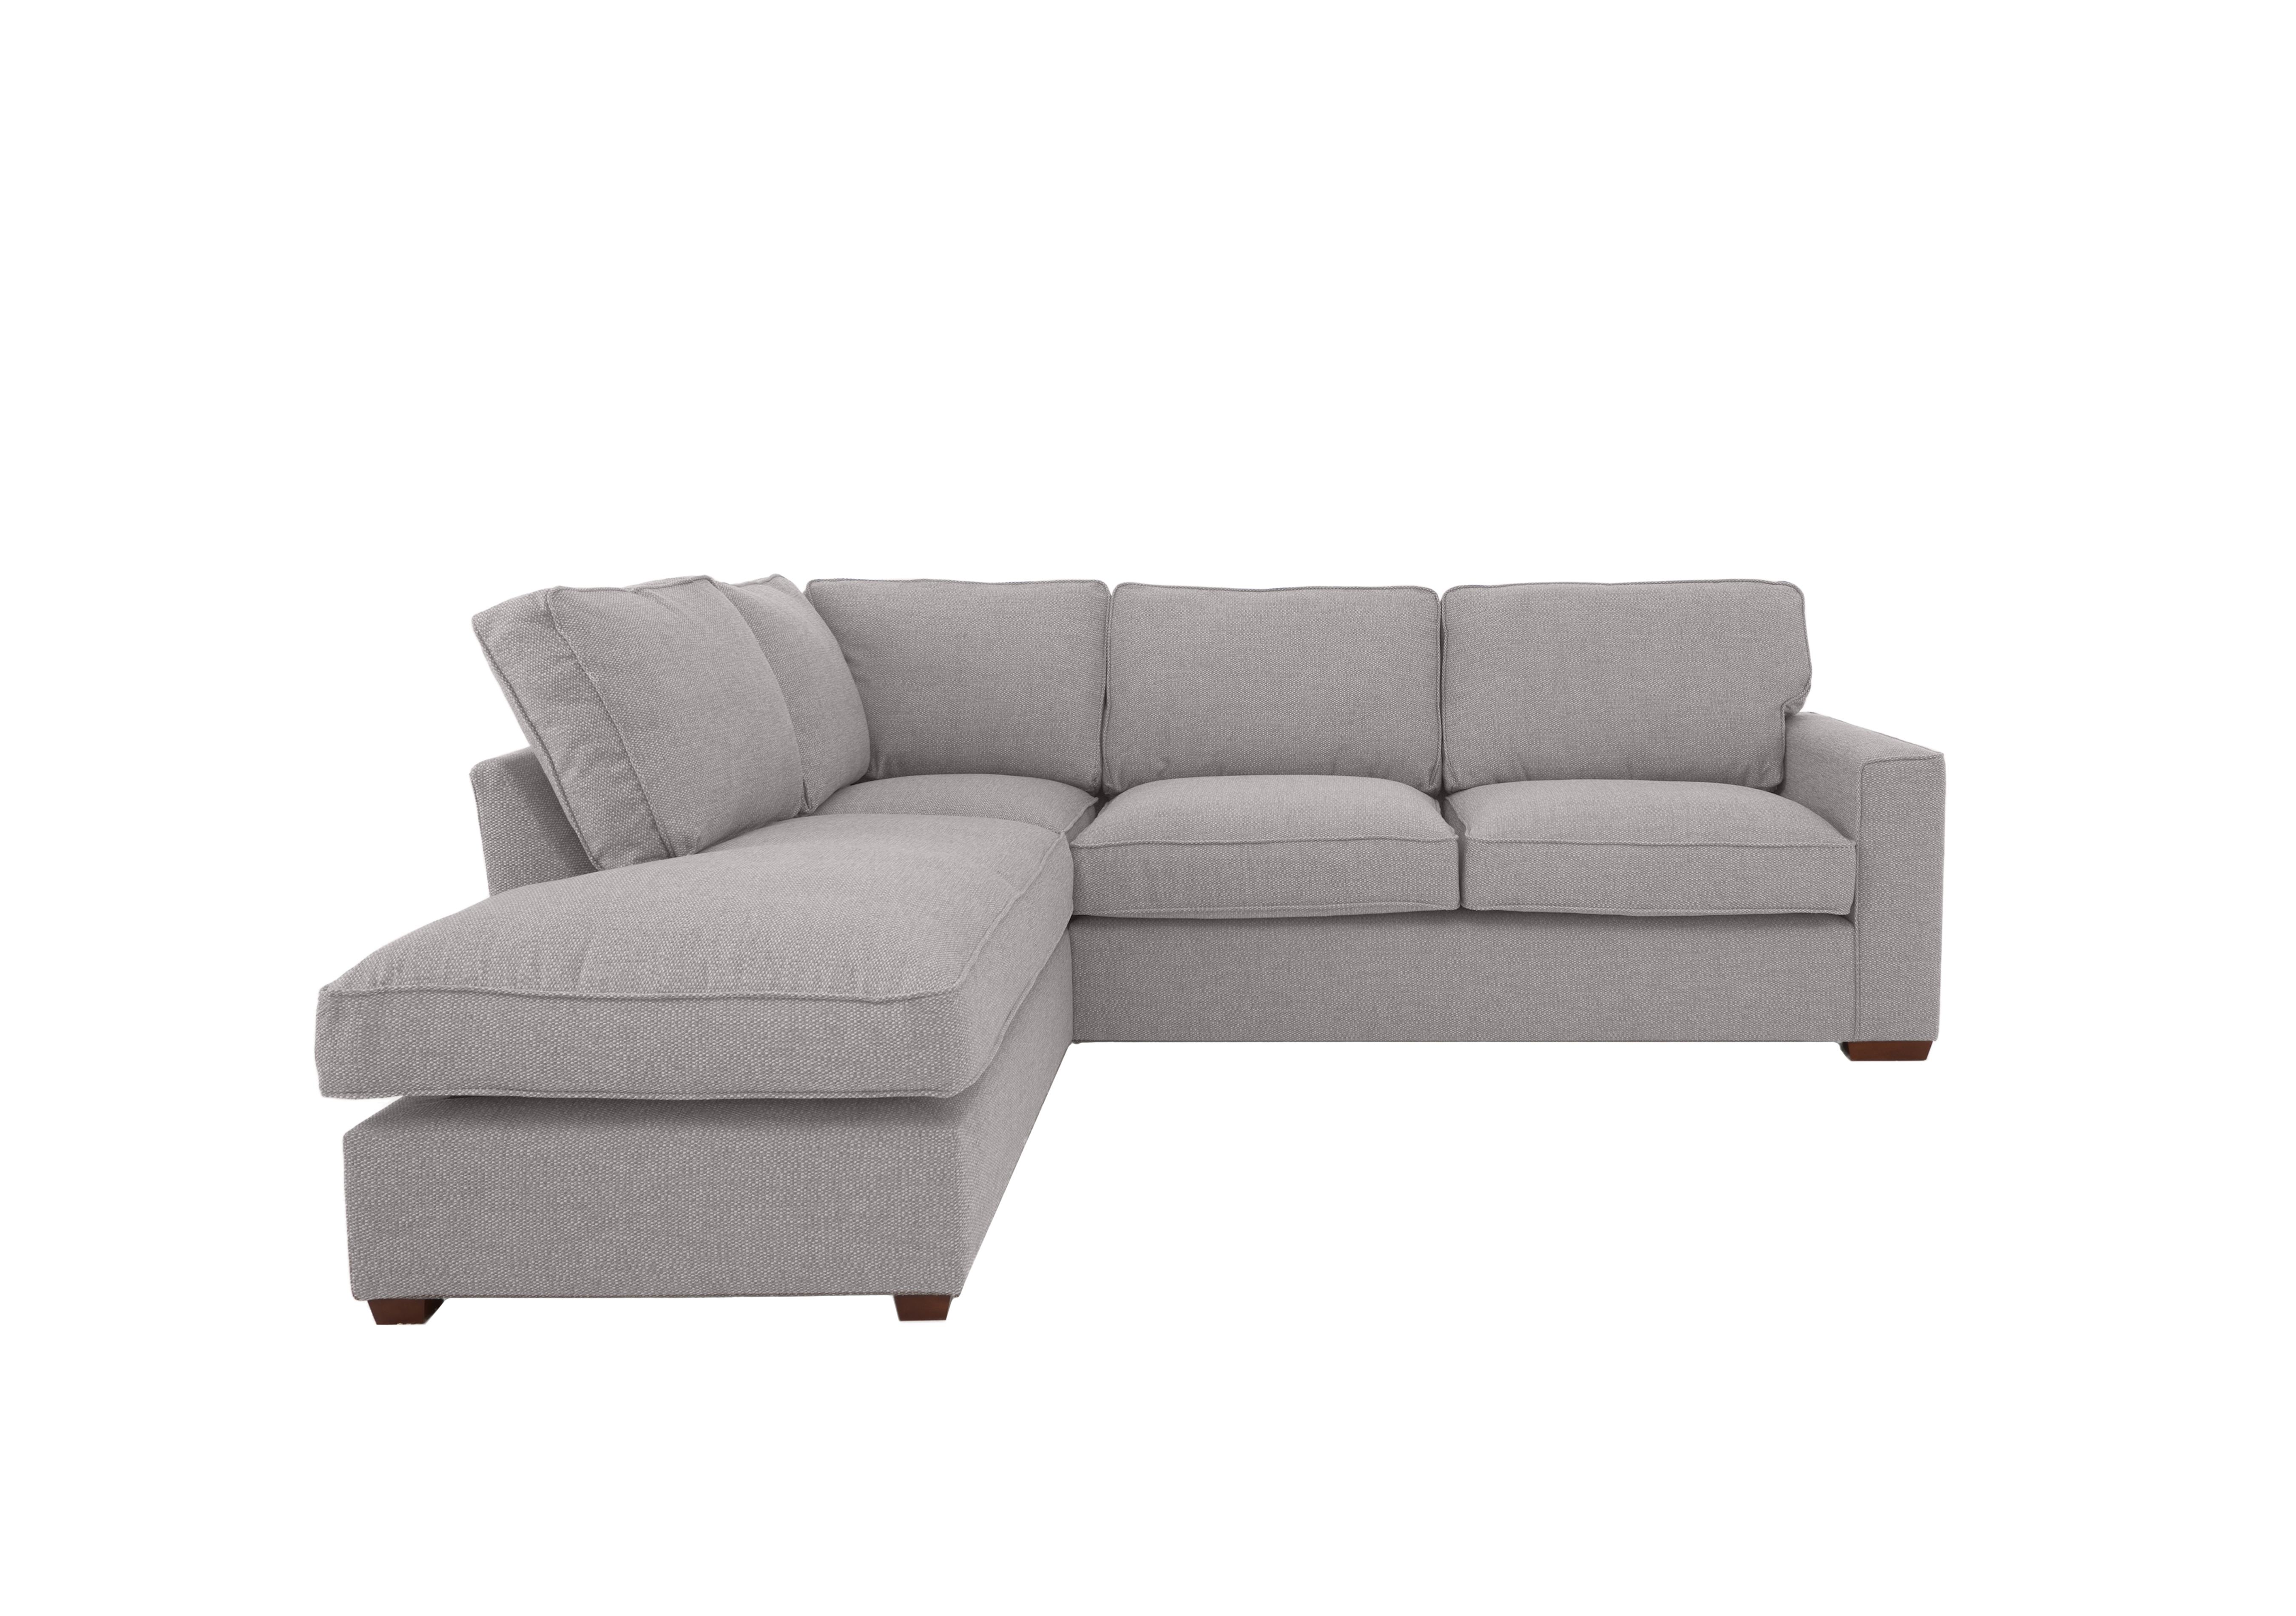 Cory Fabric Corner Chaise Classic Back Sofa in Dallas Silver on Furniture Village